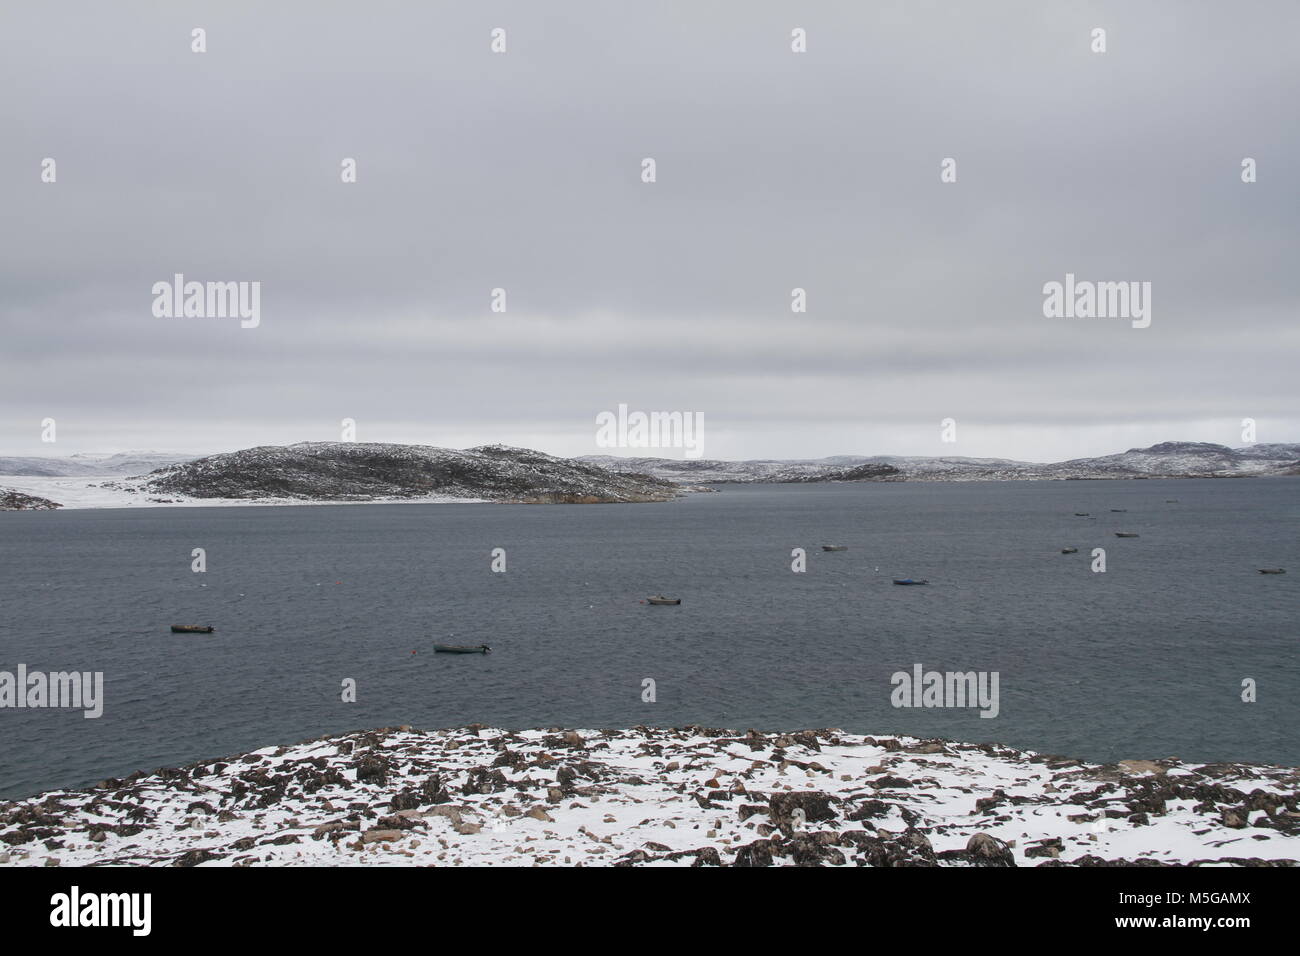 Voir de Cape Dorset (Nunavut Kinngait) avec une vue sur l'océan et les bateaux, une communauté inuit du nord dans l'Arctique canadien Banque D'Images